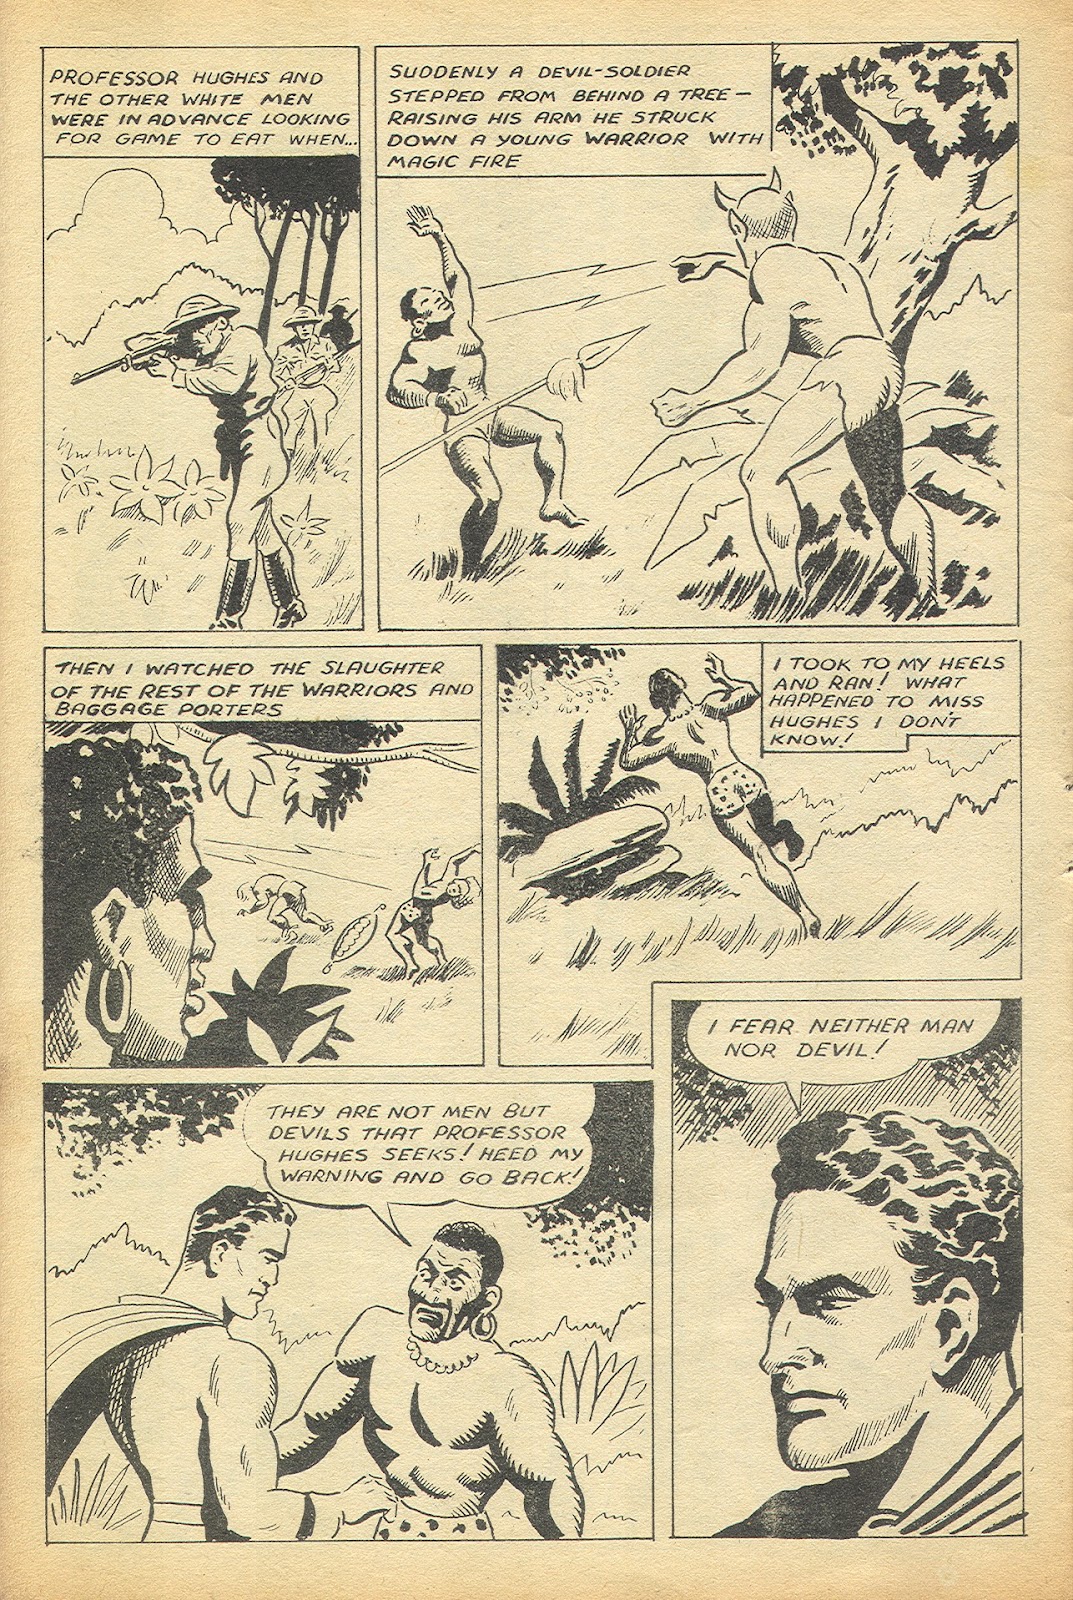 Super Thriller issue 12 - Page 6